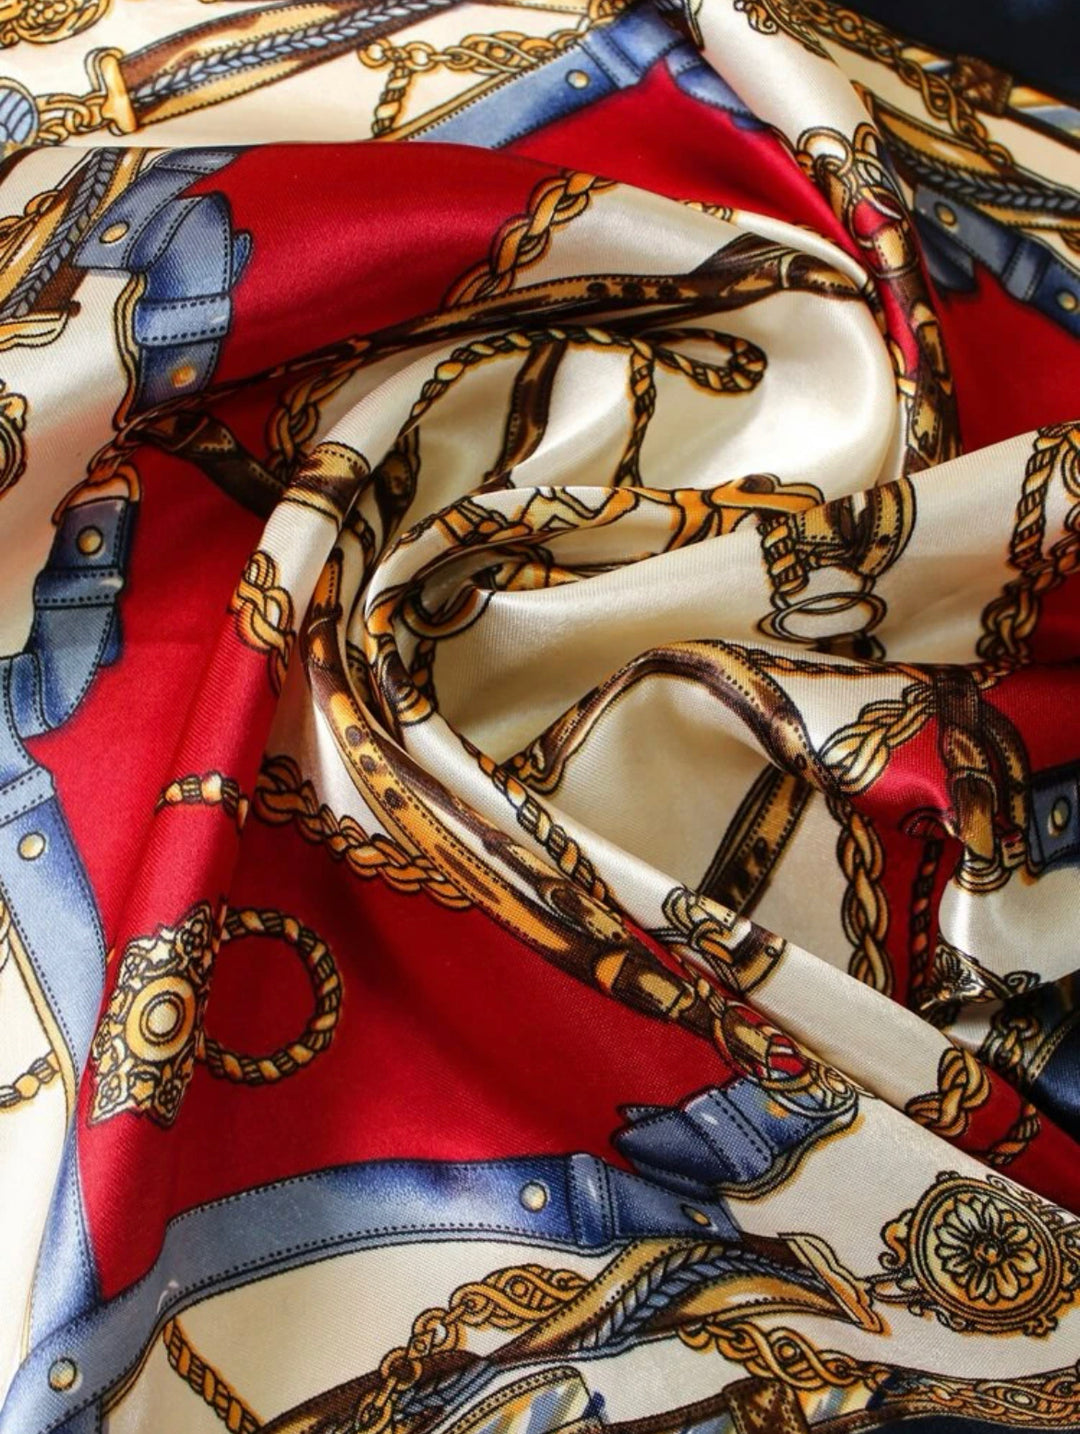 Chain print bandana in red